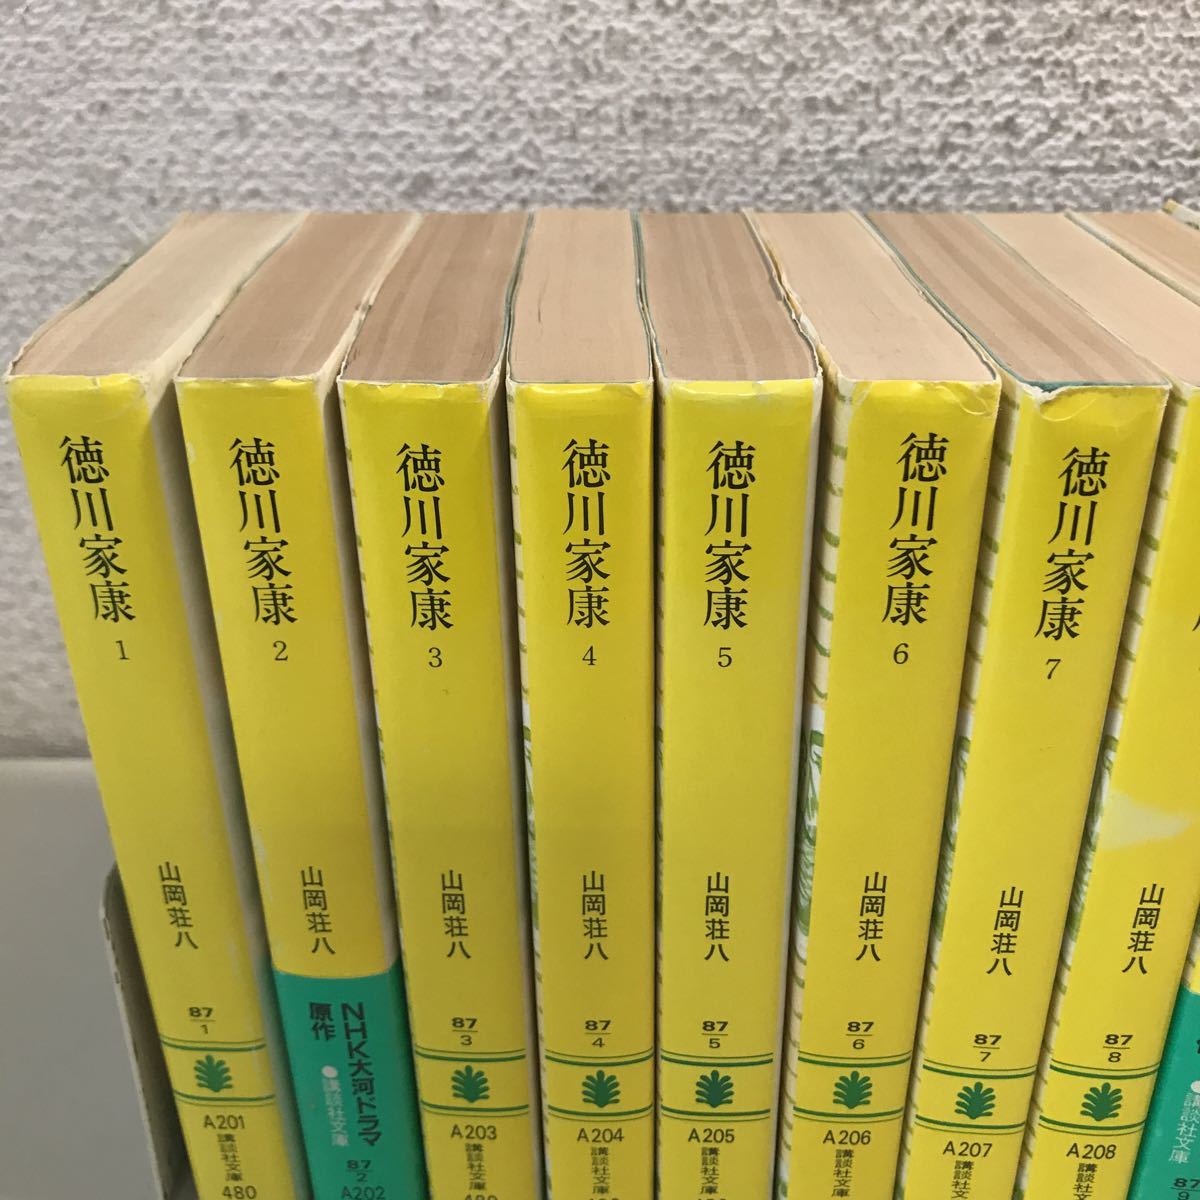 R16^.. фирма библиотека добродетель река дом . все 26 шт комплект Yamaoka Sohachi / работа 1981 год ~83 год выпуск .. фирма бесплатная доставка 230408